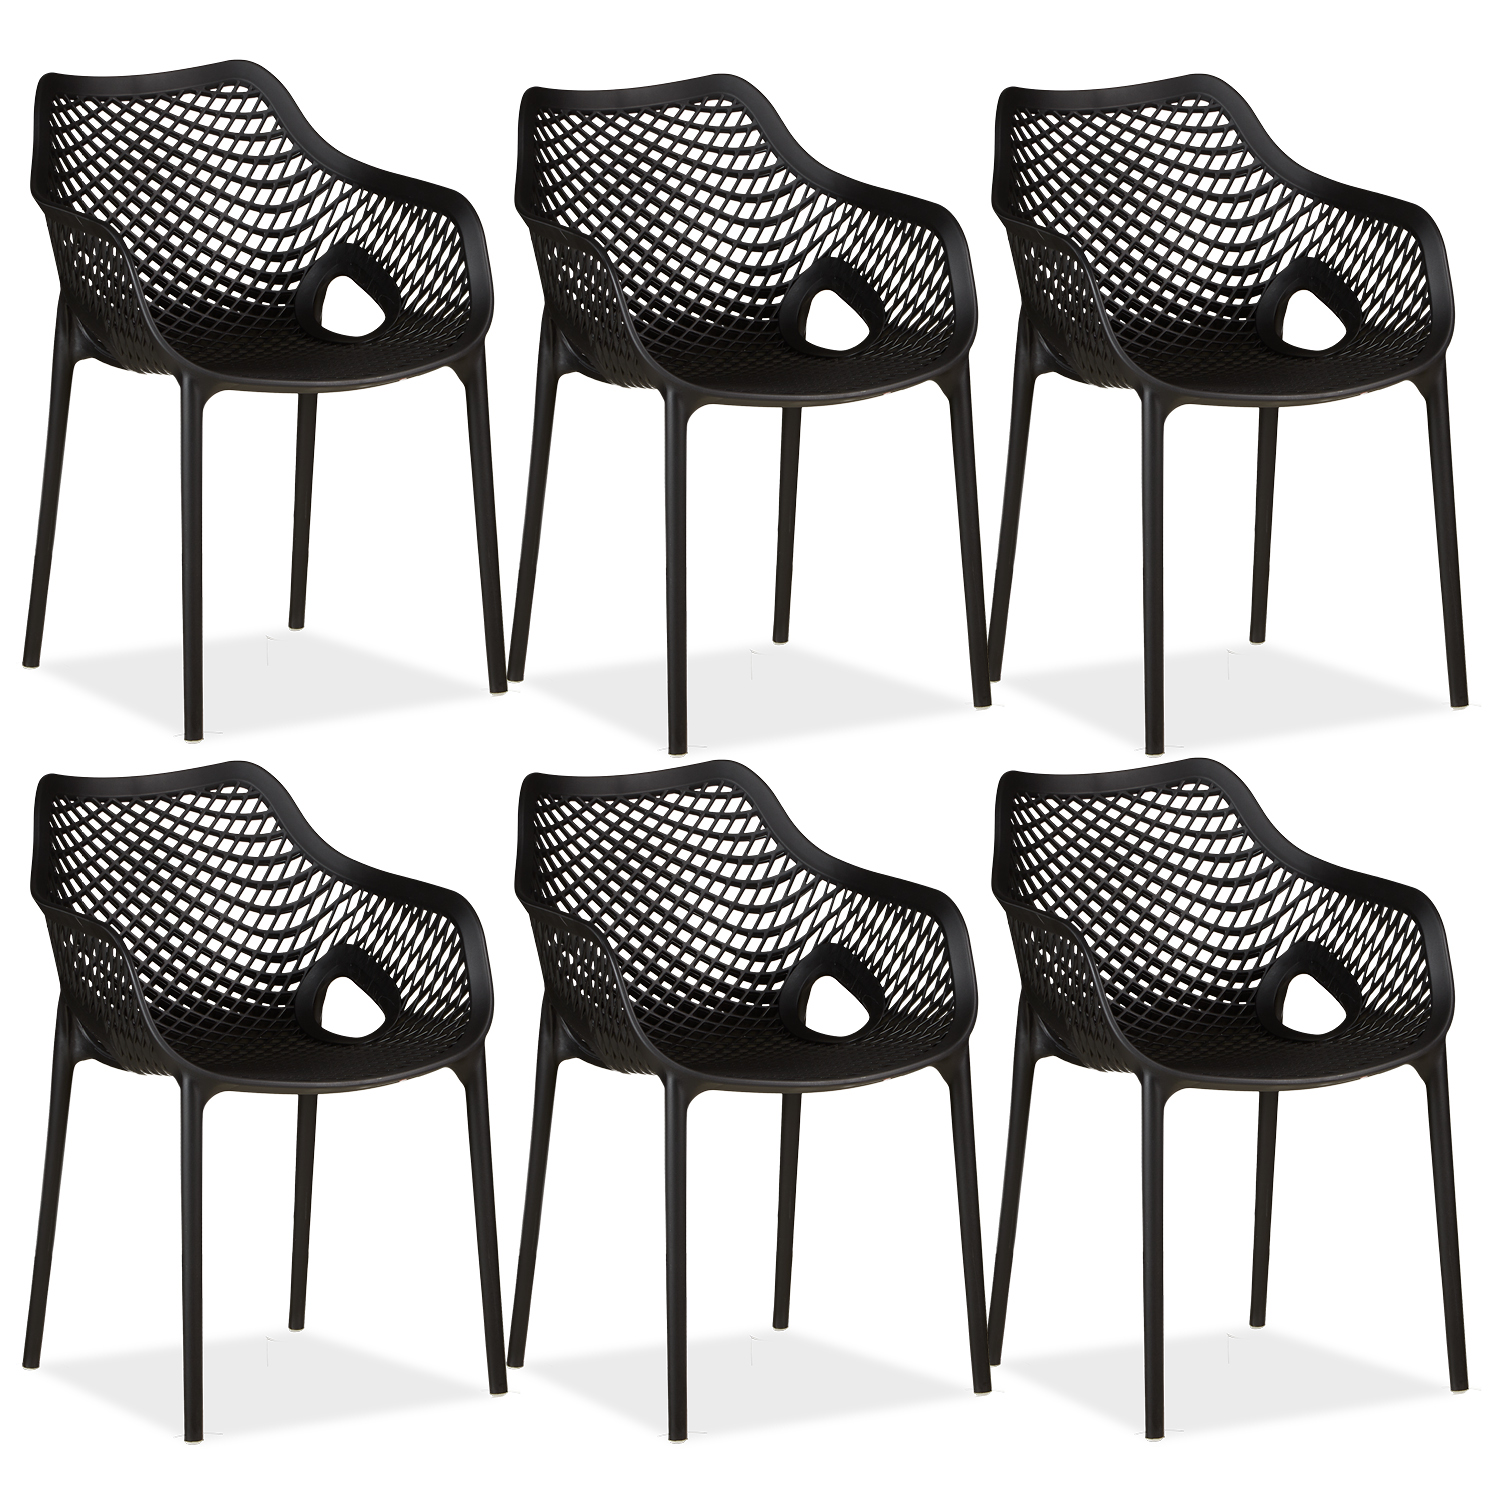 Chaise de jardin avec accoudoirs Noir Lot de 6 Fauteuils de jardin Plastique Chaises exterieur Chaises empilable